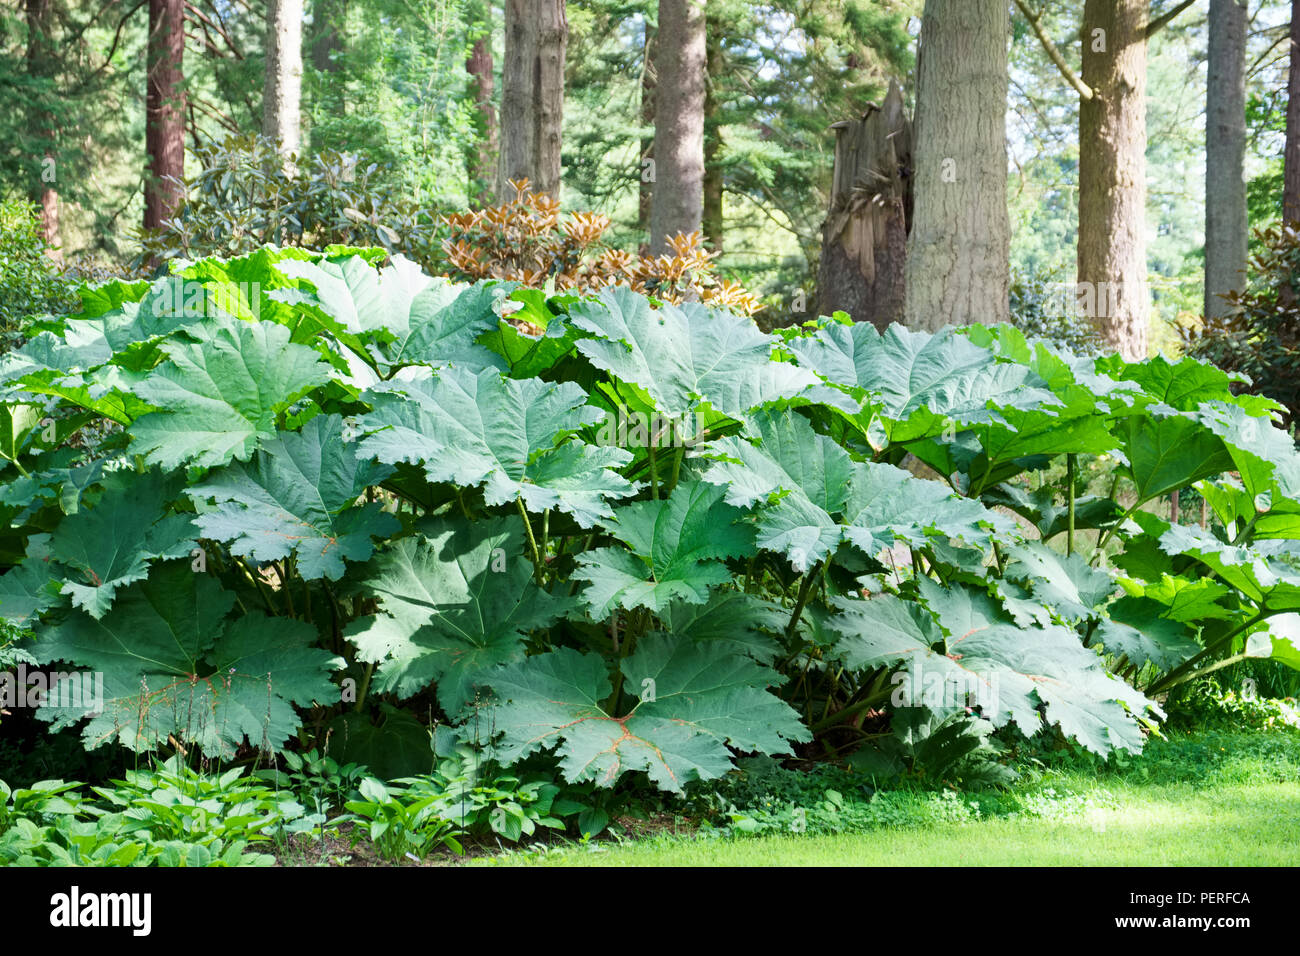 Rabarbaro Gigante impianto di grandi dimensioni con grandi foglie verdi che crescono in bosco selvatico in Europa Foto Stock